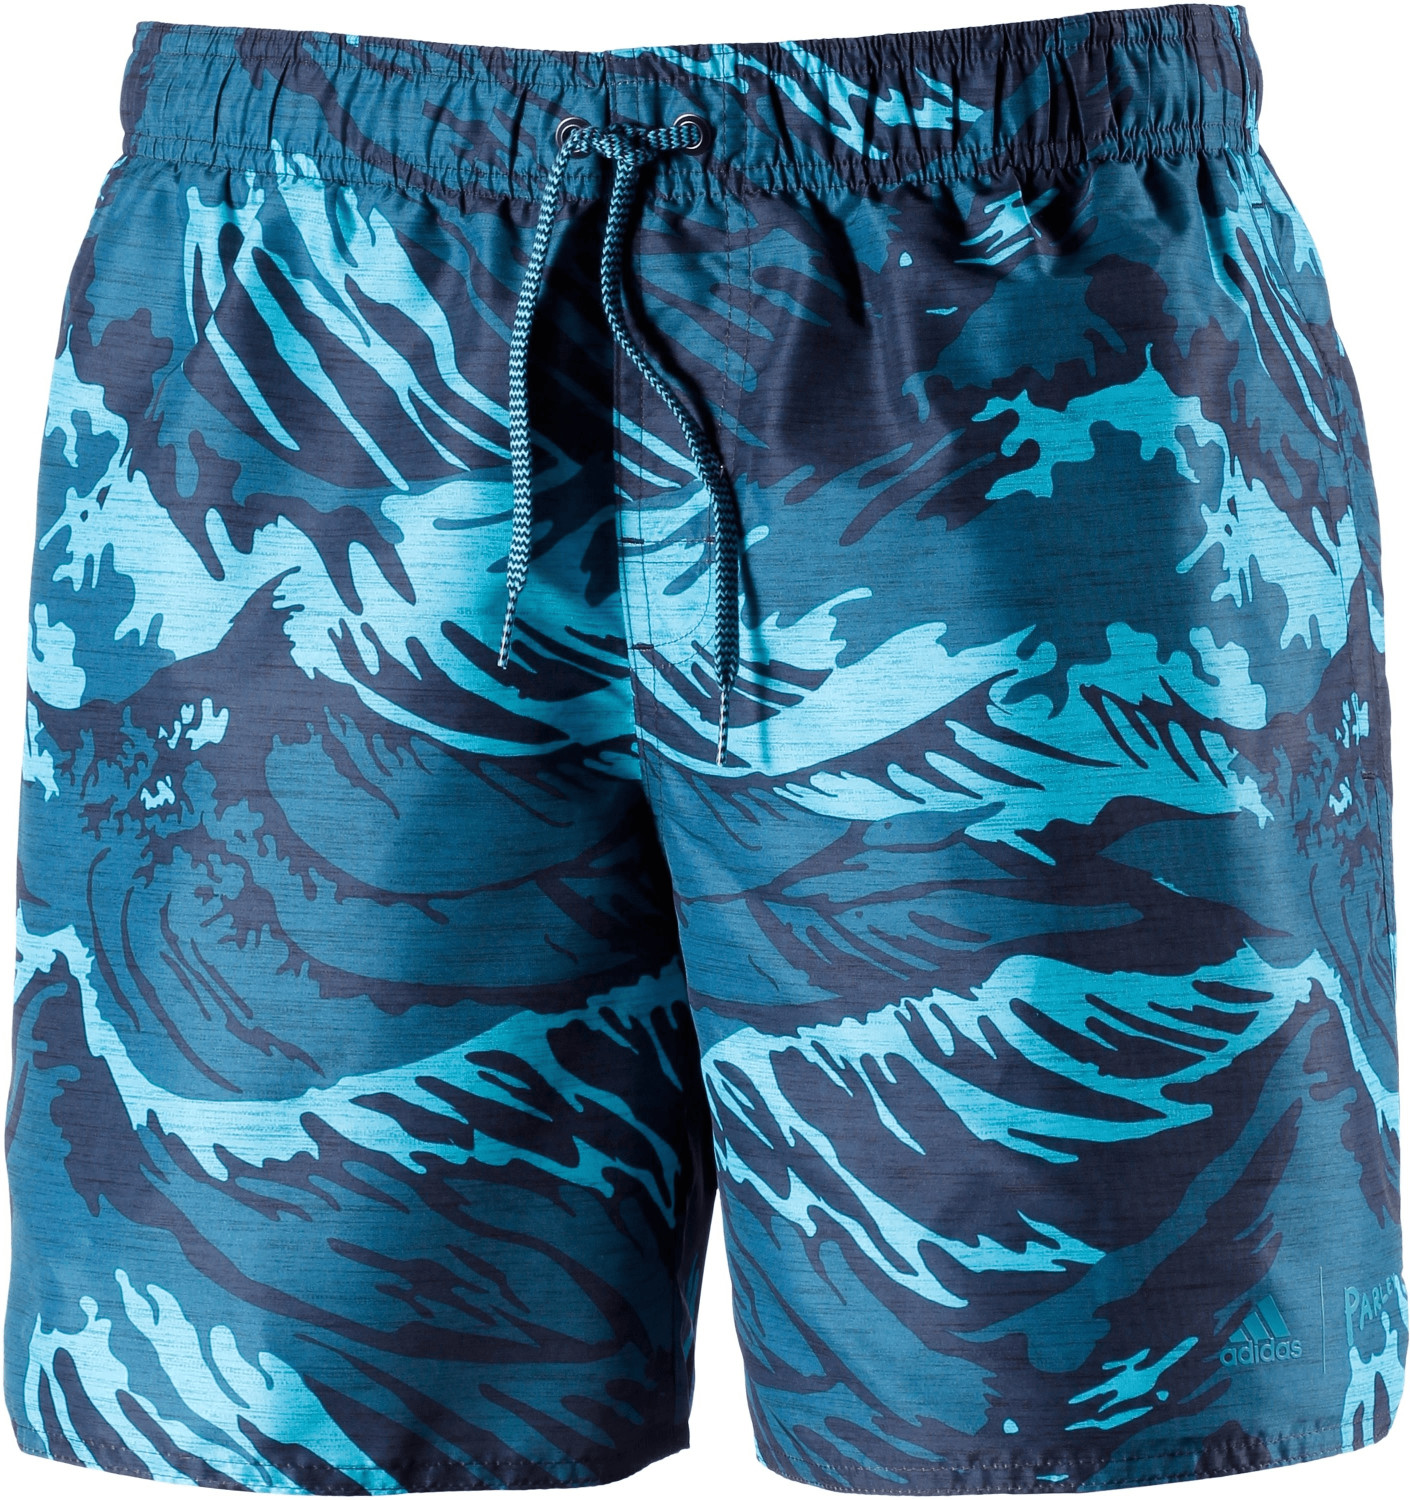 Adidas Parley Swim Shorts noble indigo/bright cyan (CV5178)